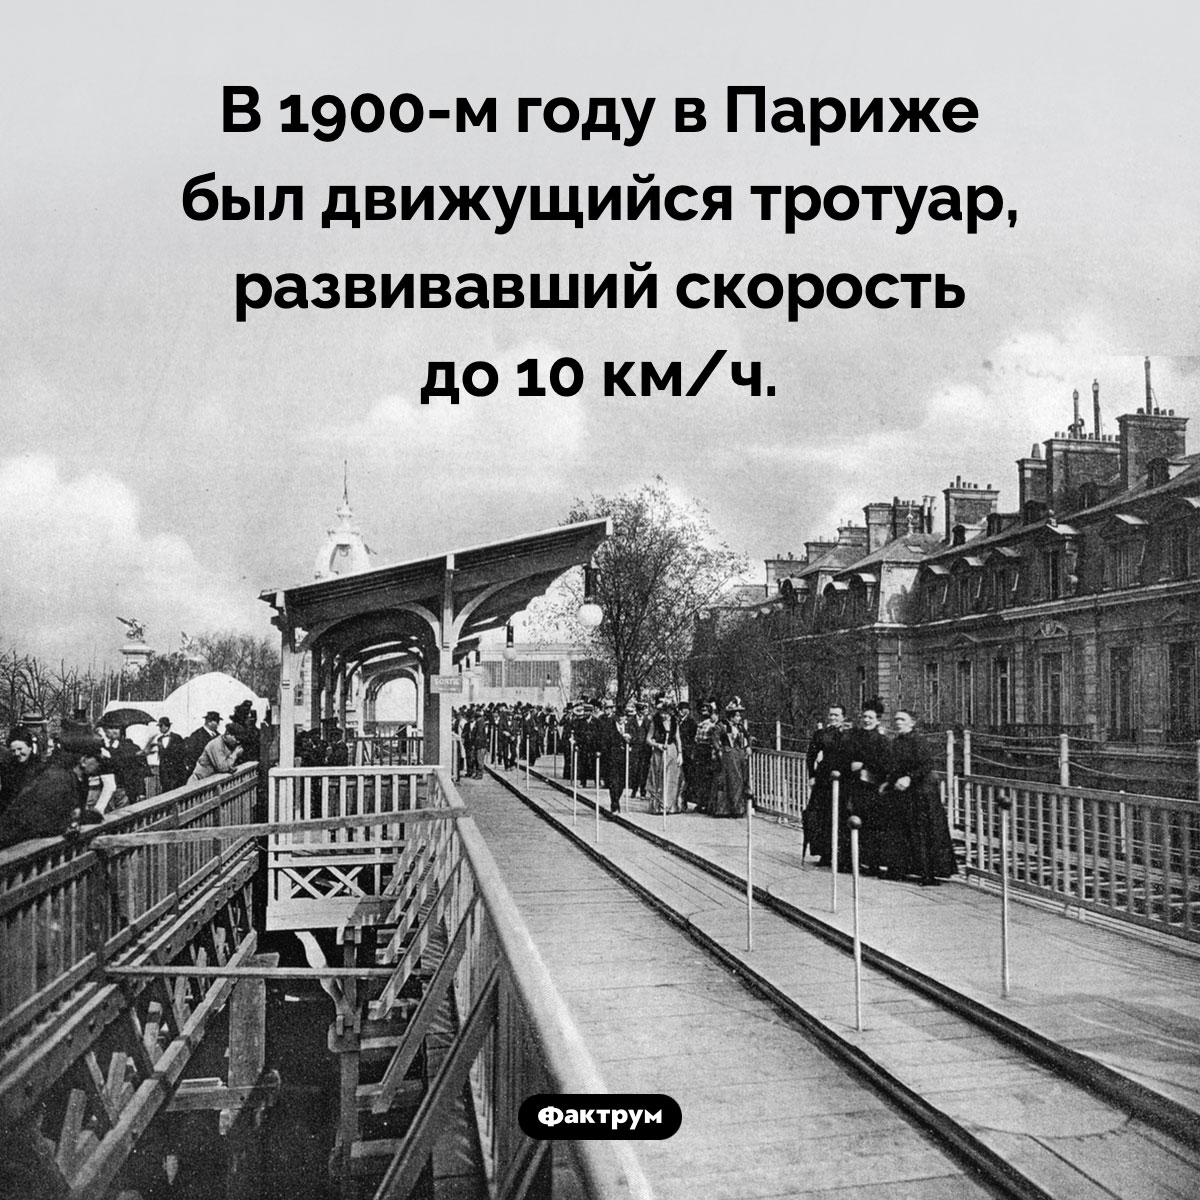 Парижский движущийся тротуар. В 1900-м году в Париже был движущийся тротуар, развивавший скорость до 10 км/ч.